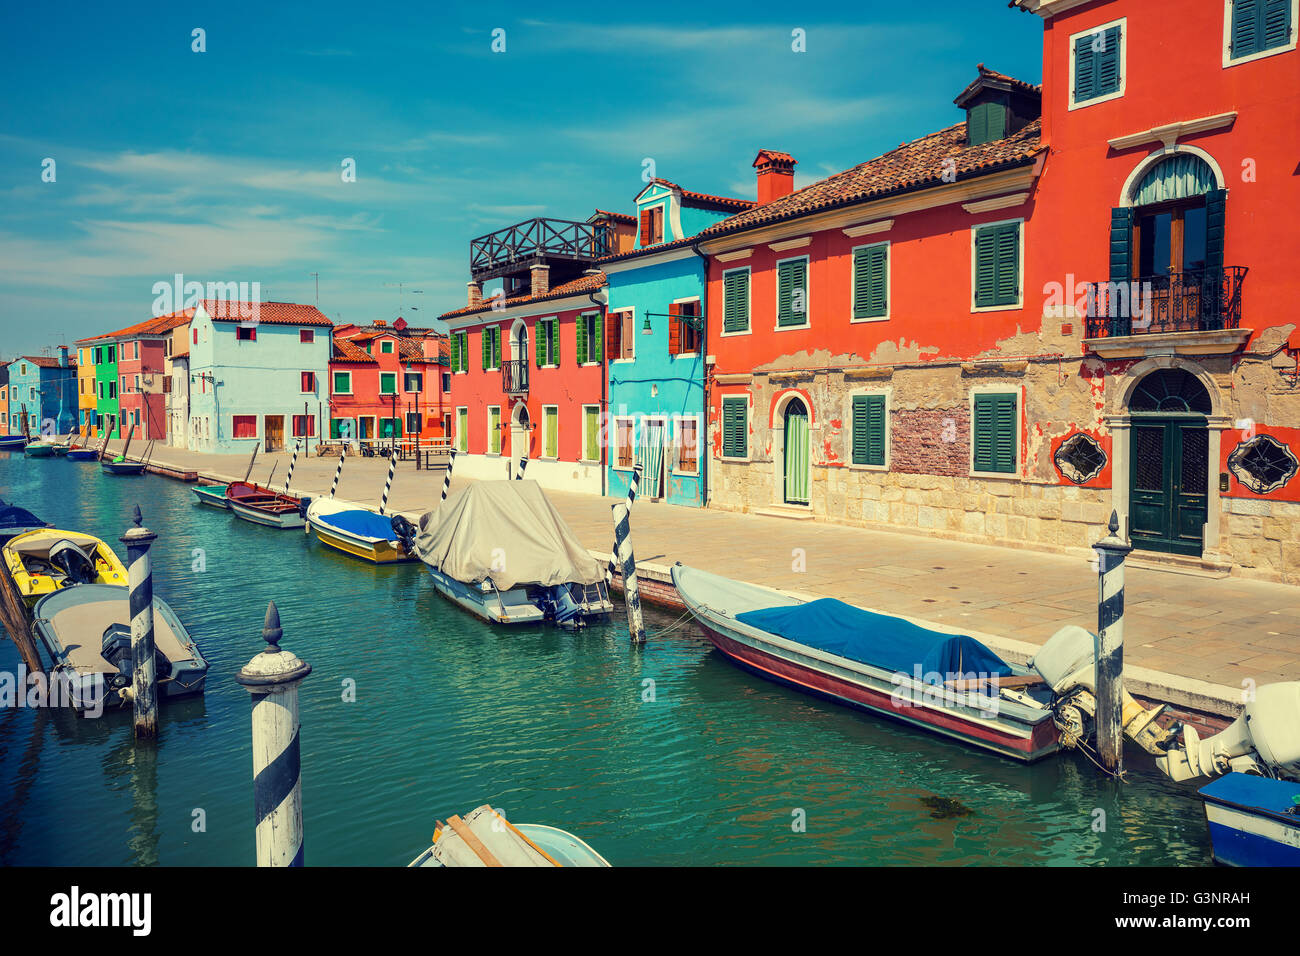 Burano Island near Venice, Italy Stock Photo